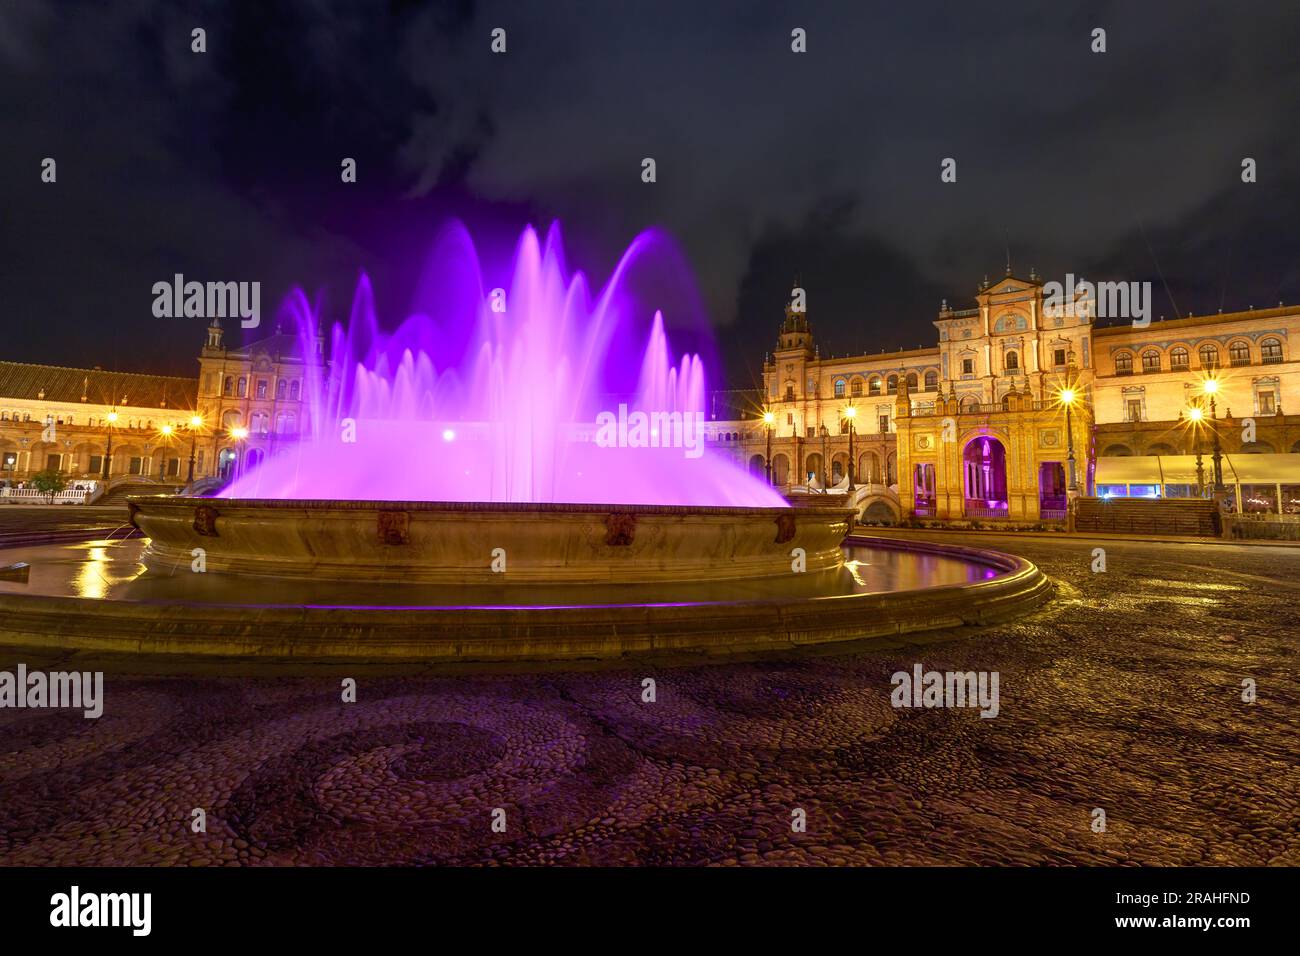 Quando la notte abbraccia Plaza de Espana a Siviglia, la fontana diventa uno spettacolo affascinante, inondato di luci radianti. L'acqua a cascata, colorata Foto Stock